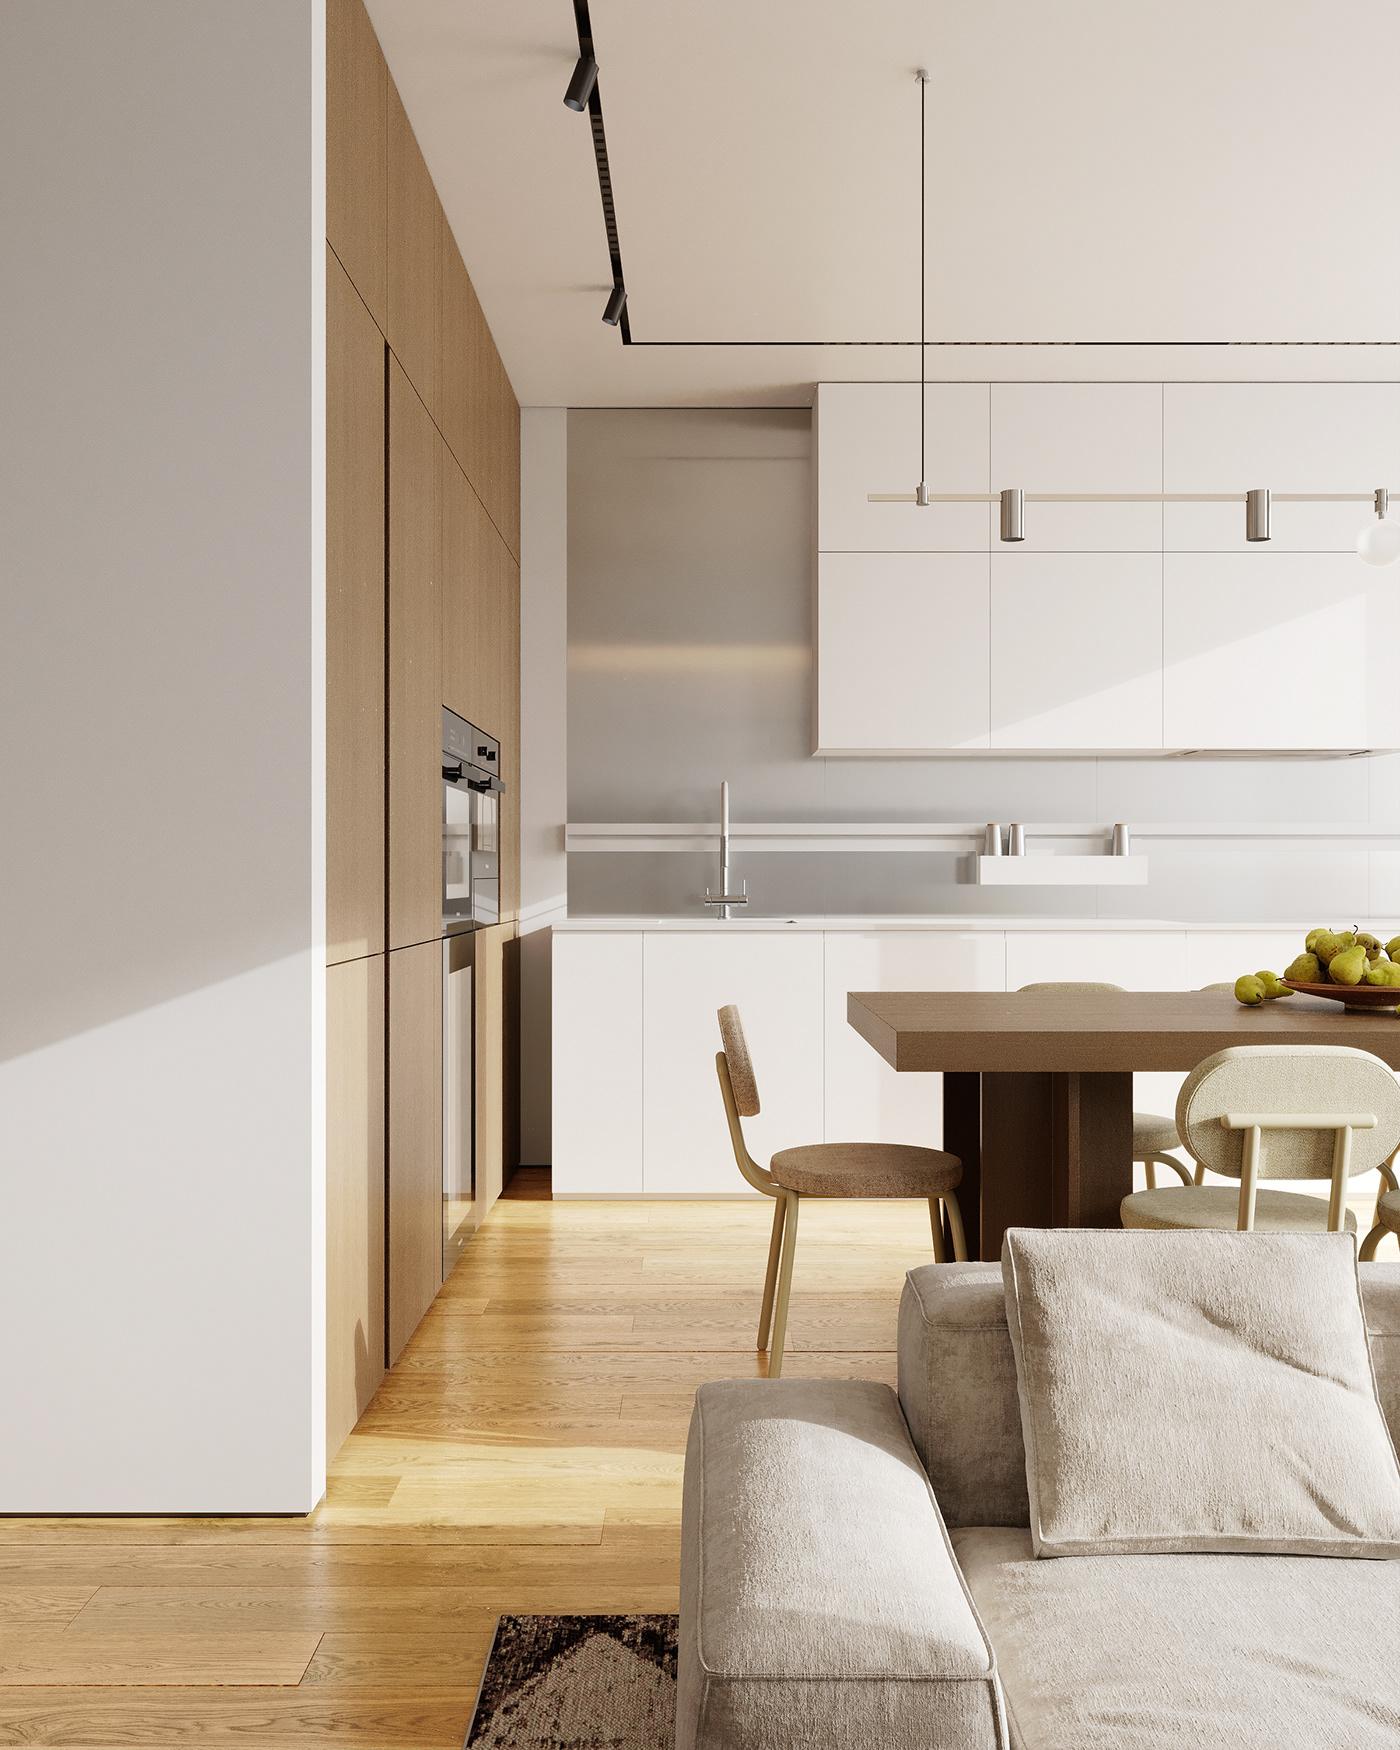 современная кухня гостиная сделана в стиле современного минимализма. светлая кухня и чистый интерьер